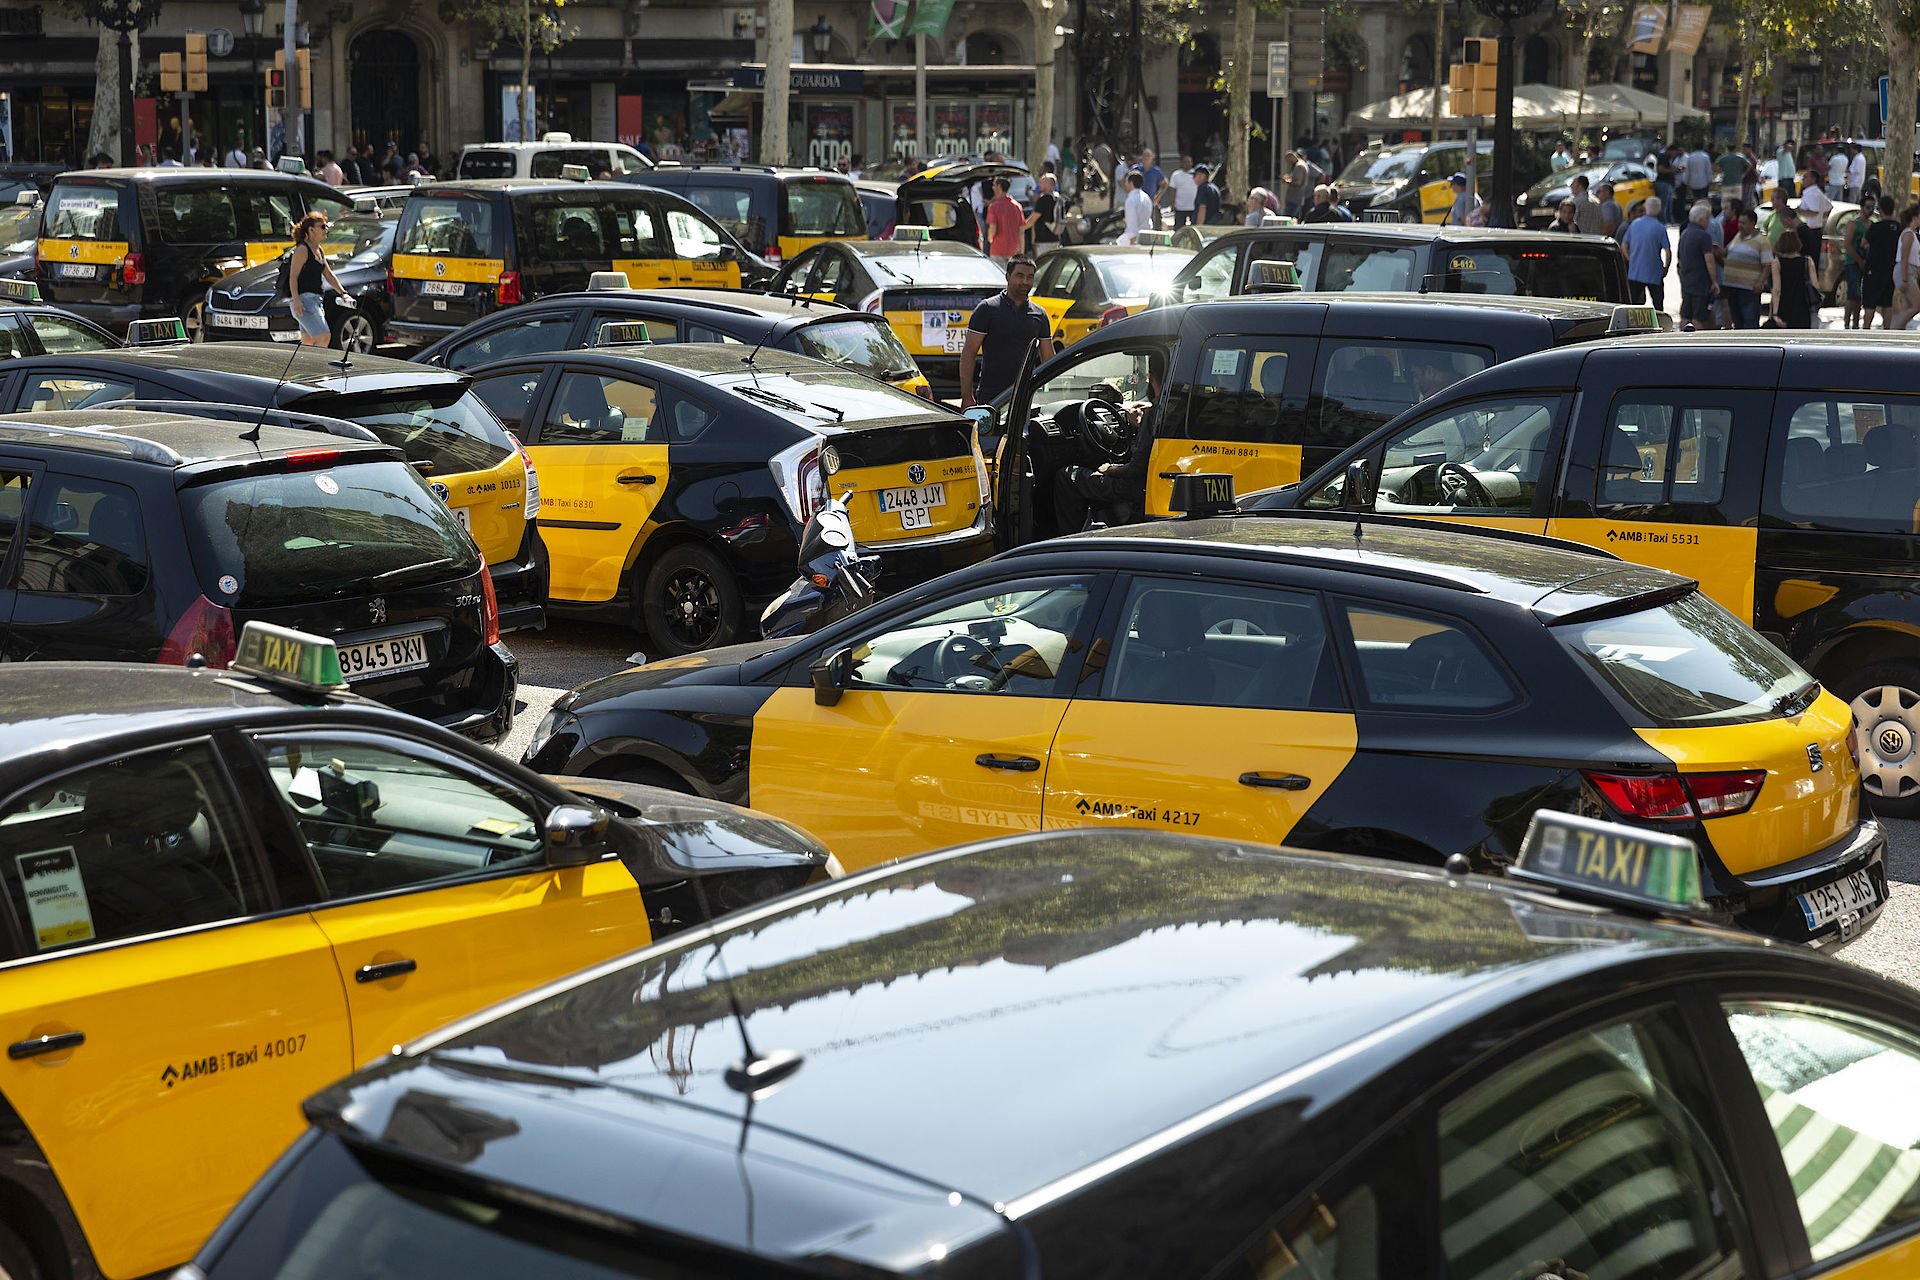 Encuesta: Suspenso de los barceloneses al Govern por la marcha de Uber y Cabify